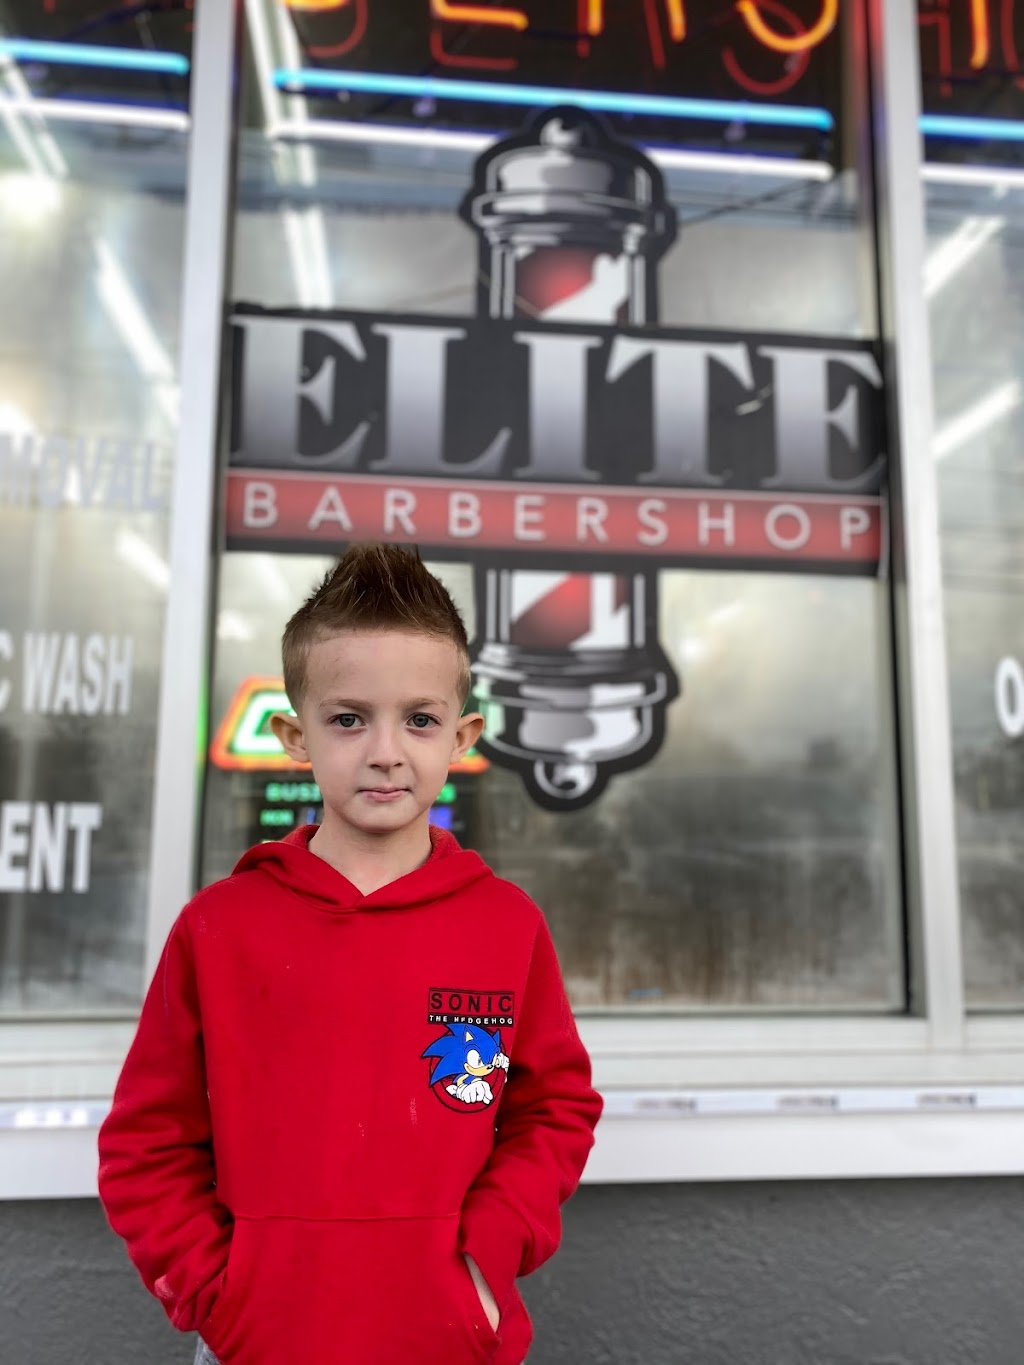 Elite Barbershop | 2205 NJ-37 E, Toms River, NJ 08753 | Phone: (732) 270-0206